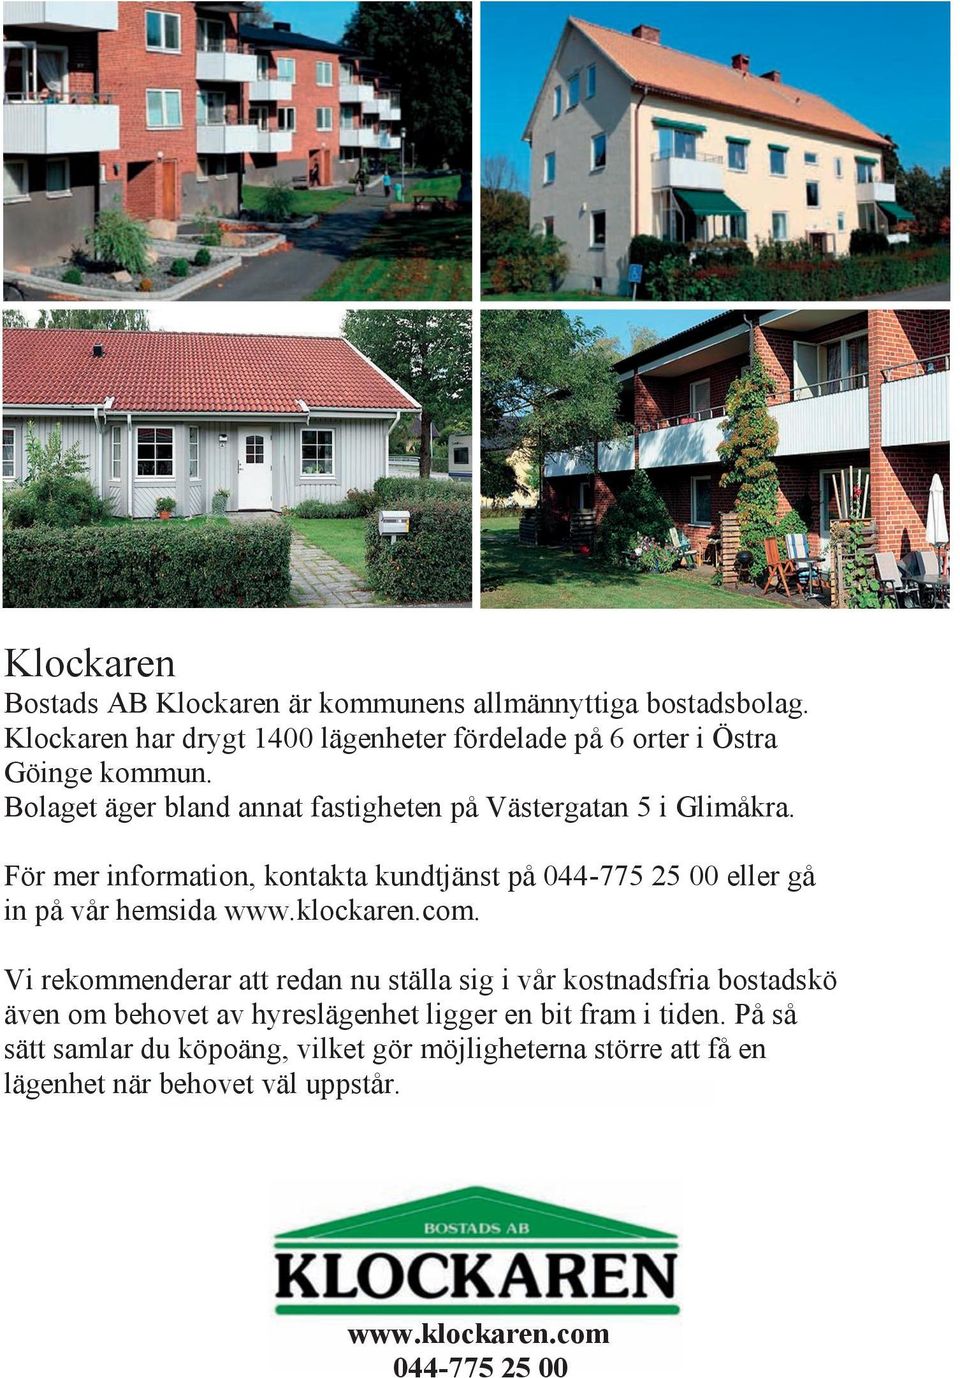 För mer Bolaget information, äger bland kontakta annat fastigheten kundtjänst på 044-775 Västergatan 25 00 5 i eller Glimåkra. gå in på vår hemsida www.klockaren.com.